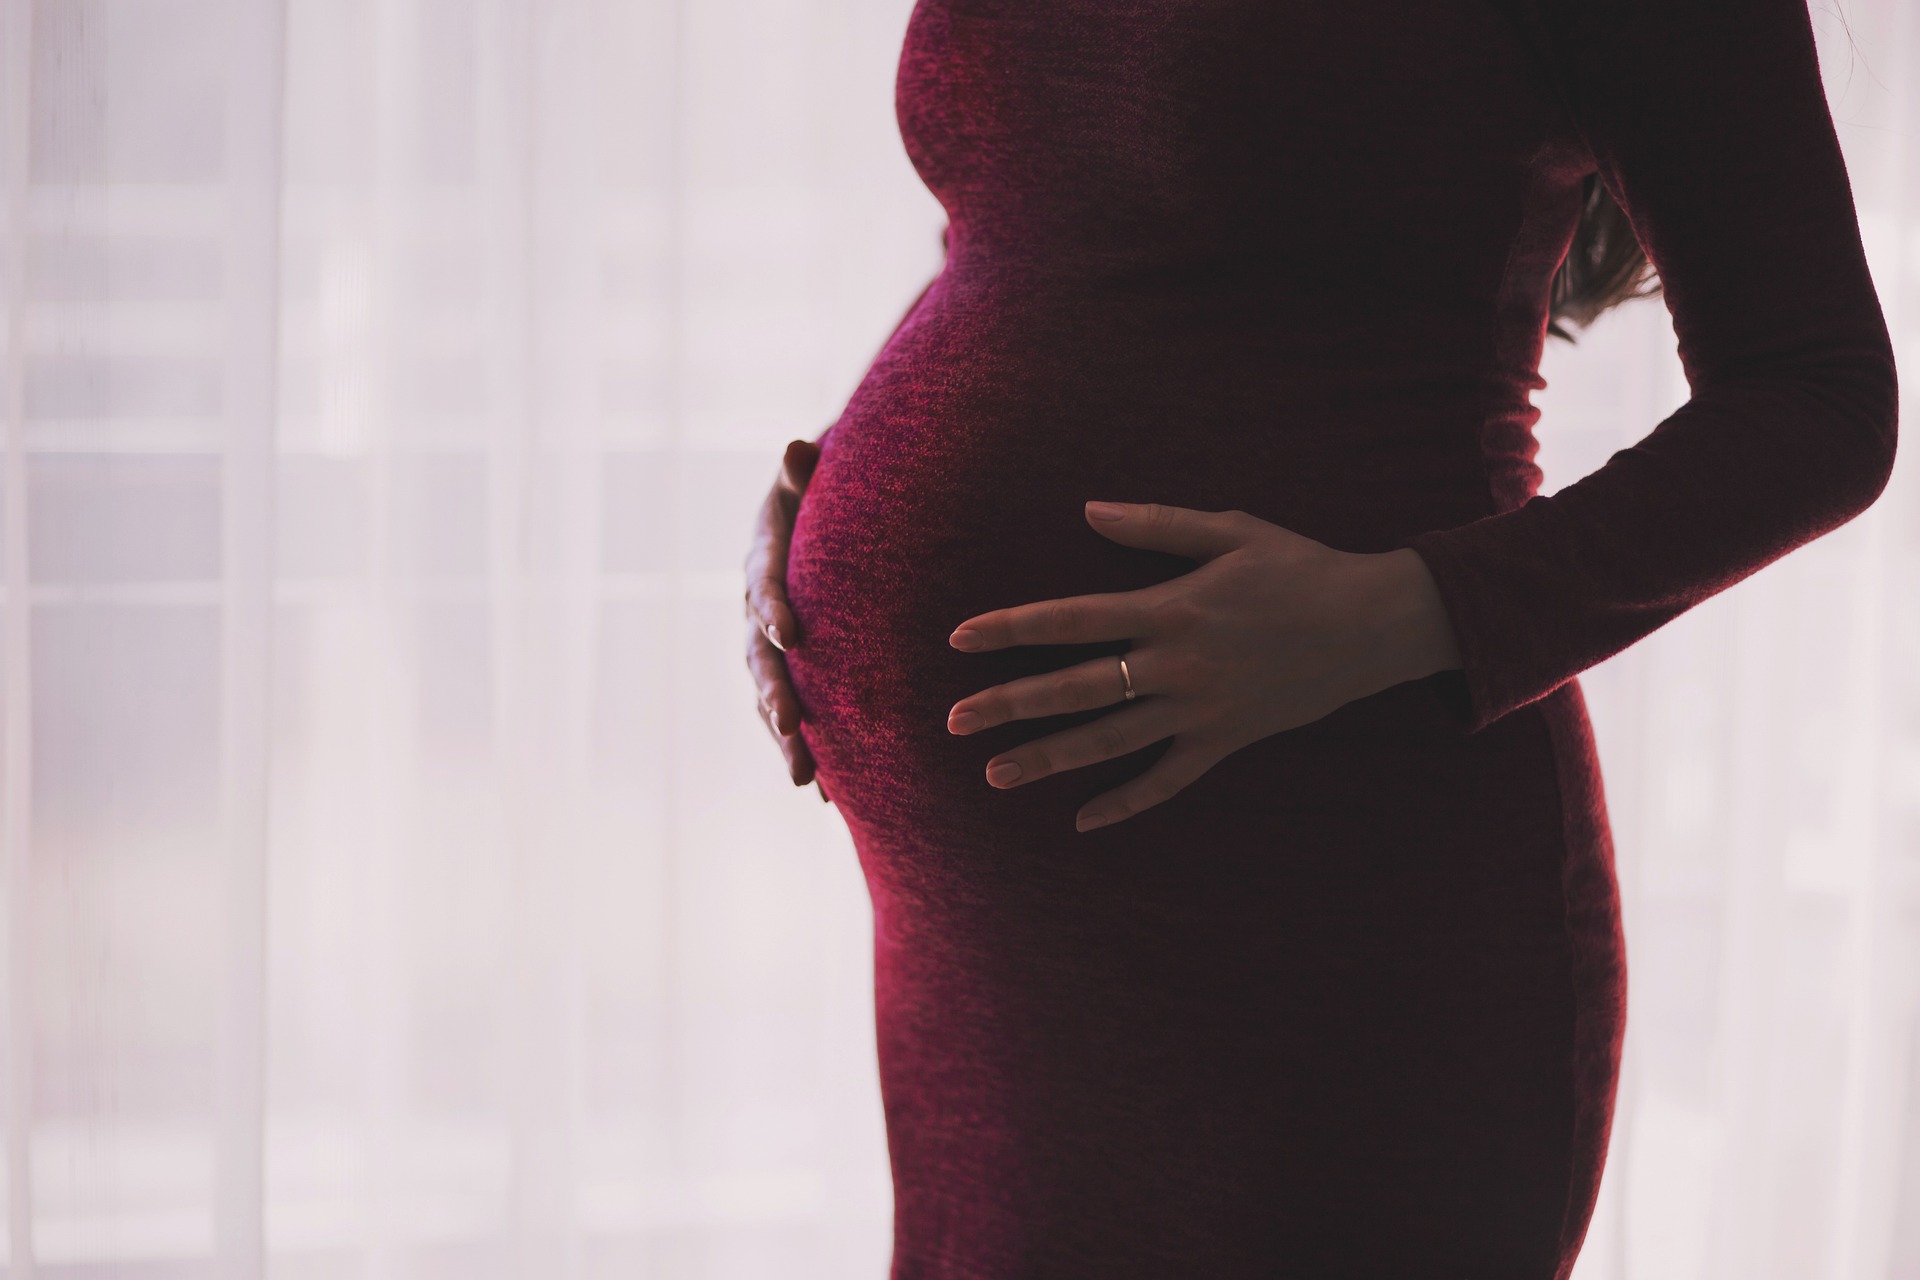 Post precedente: Si può partecipare ai concorsi pubblici in maternità?